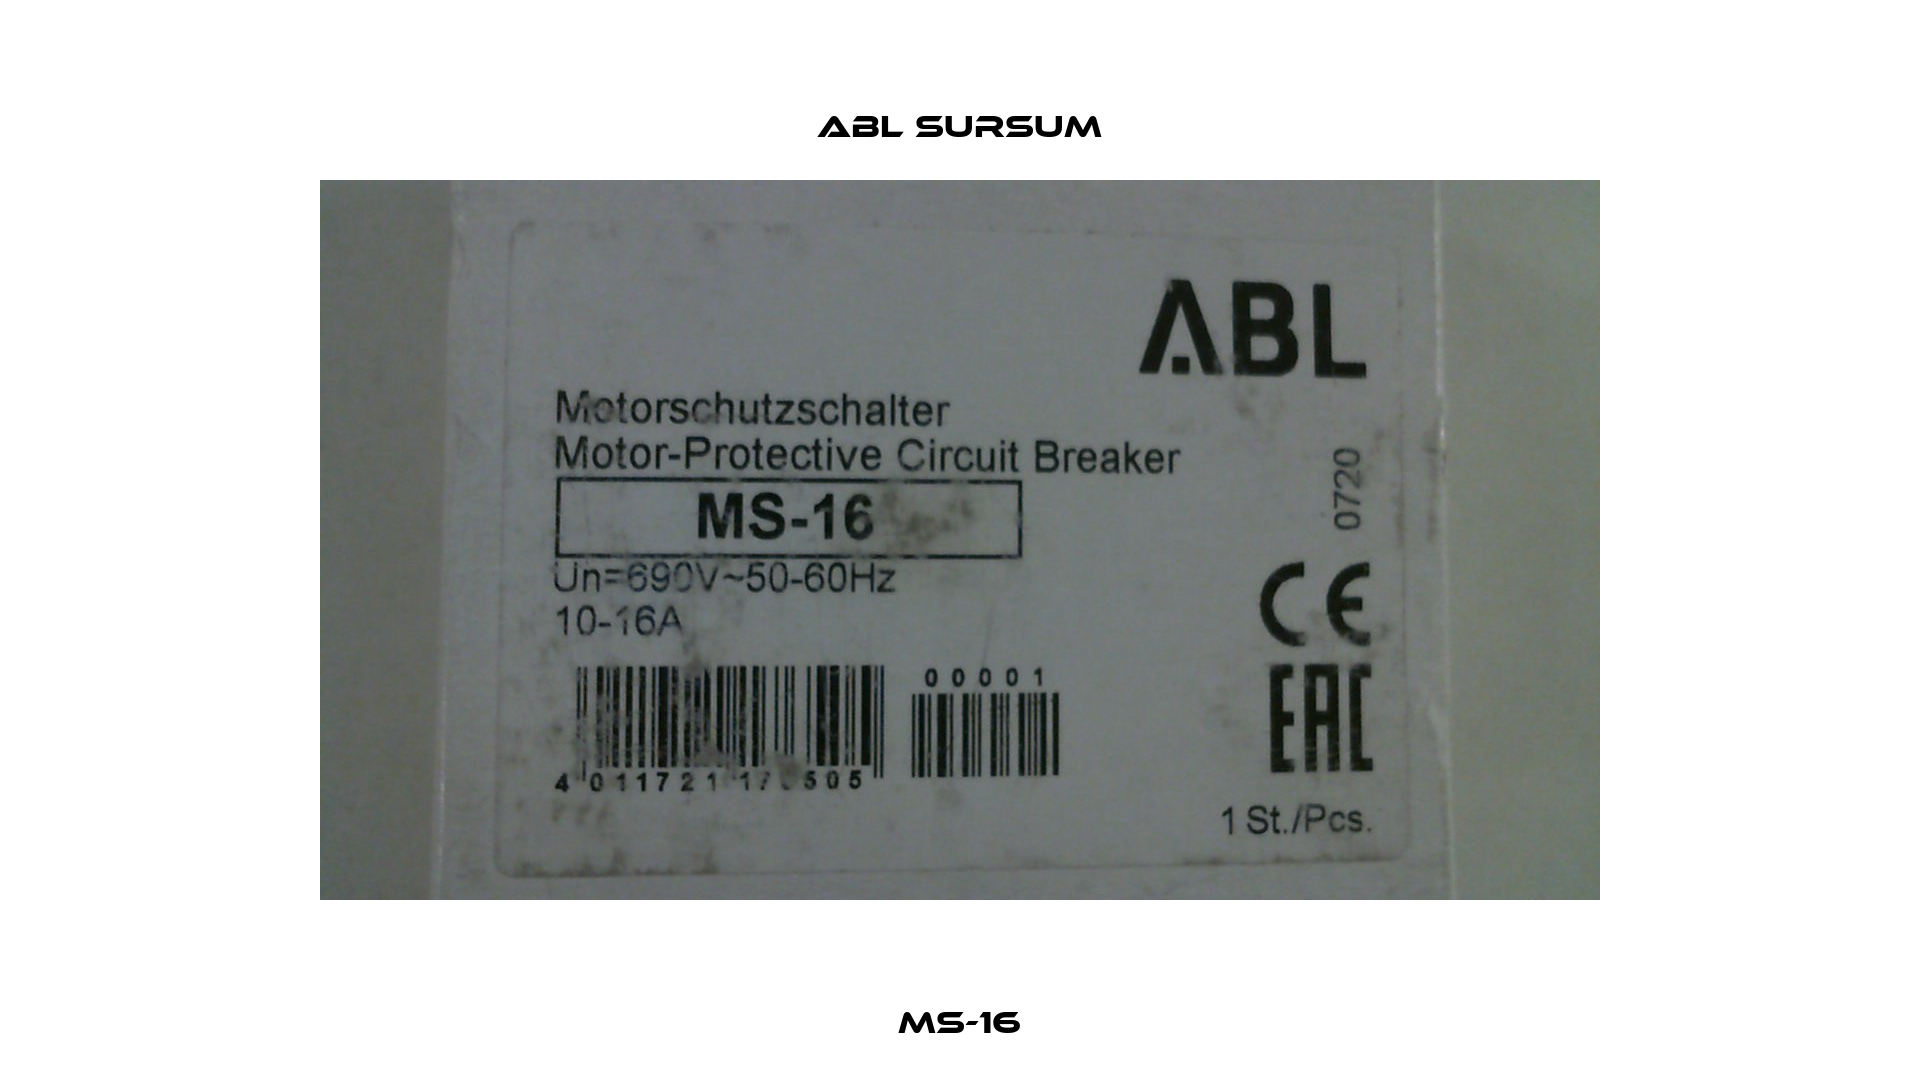 MS-16 Abl Sursum